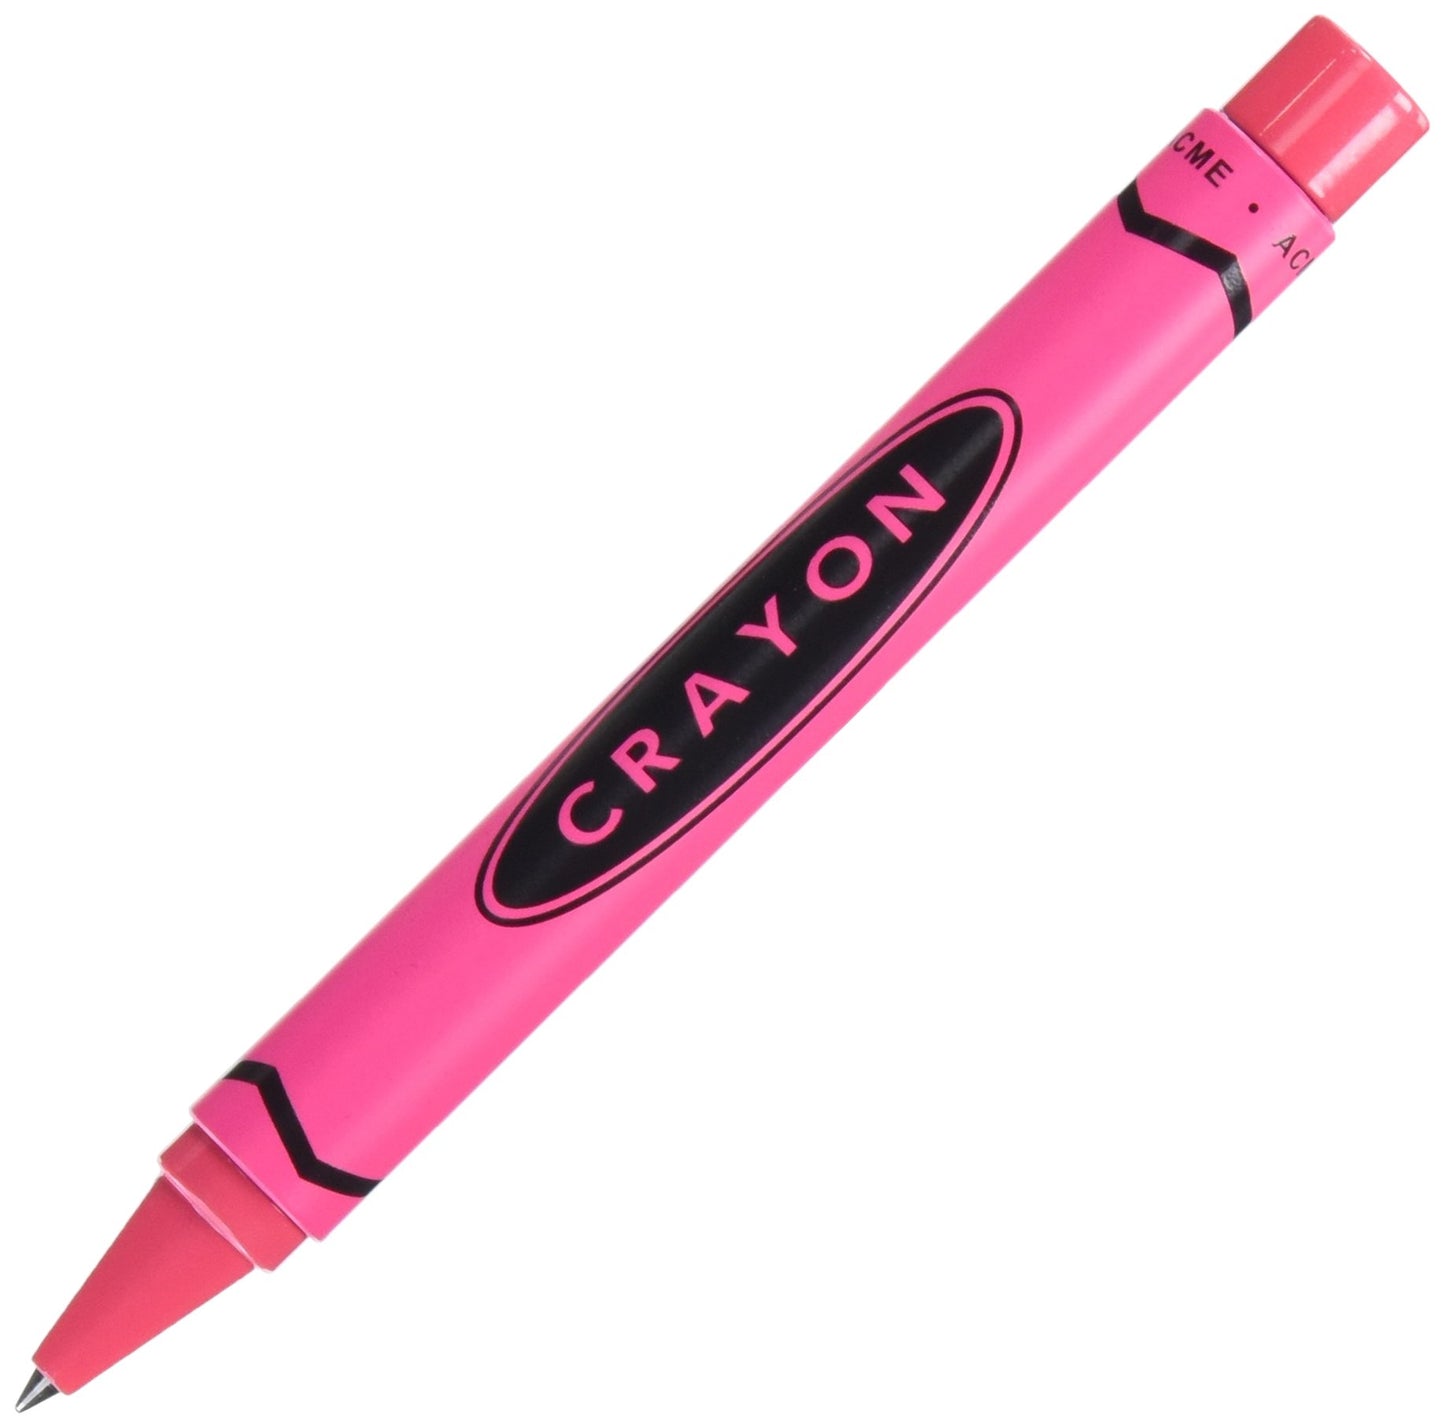 ACME Pink Crayon by Adrian Olabuenaga Retractable Rollerball Pen